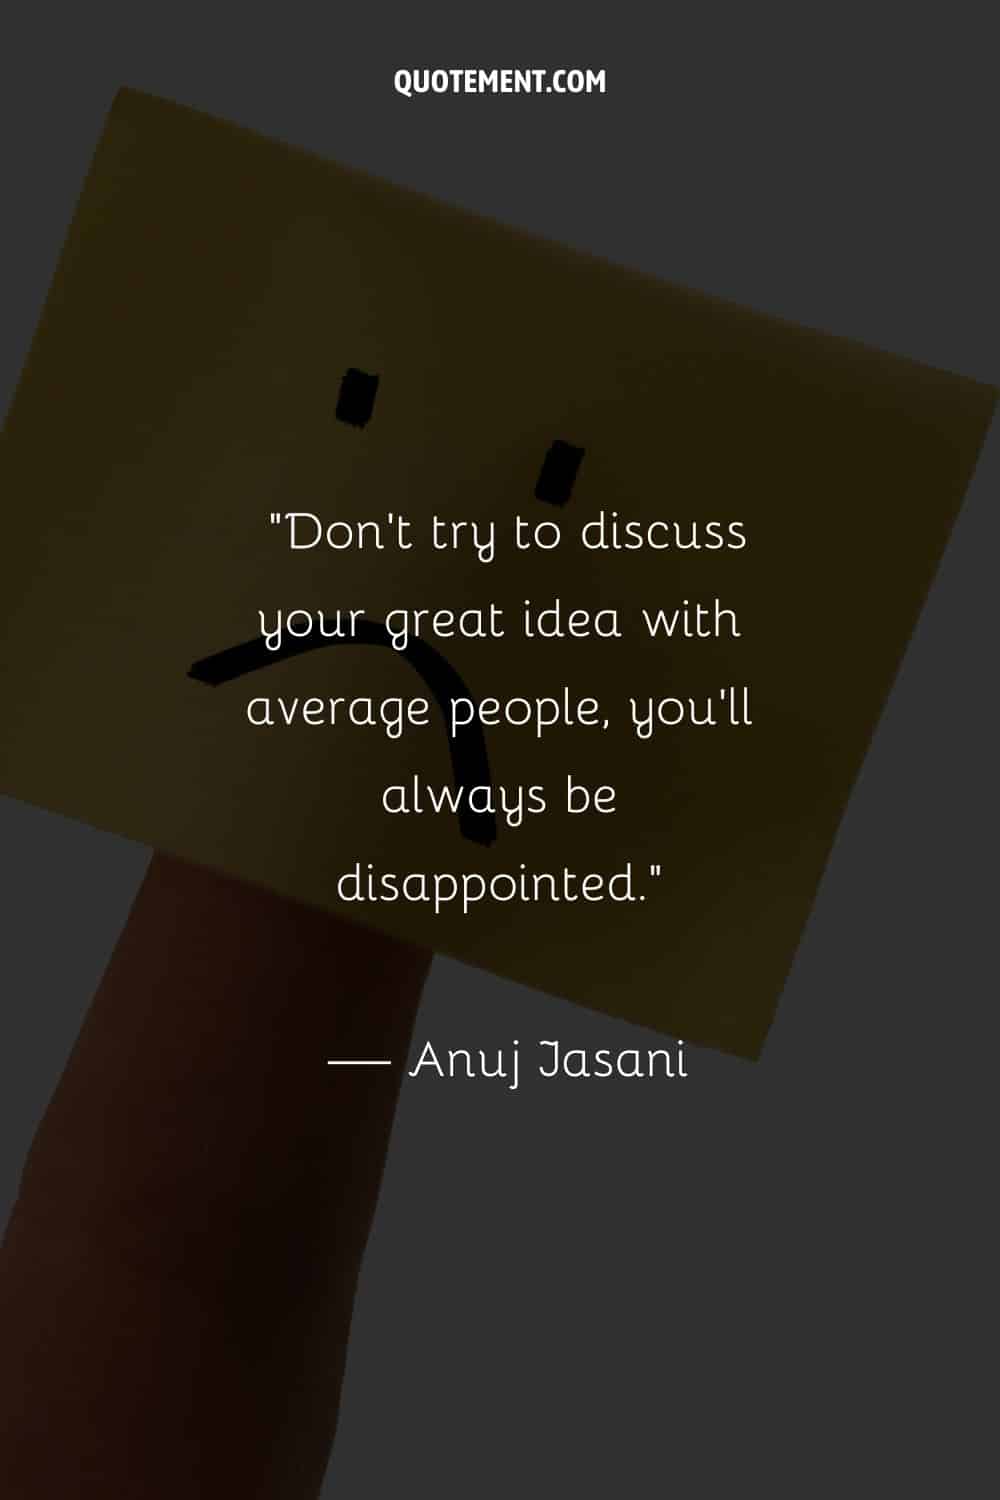 No intentes discutir tu gran idea con gente normal, siempre te decepcionará.